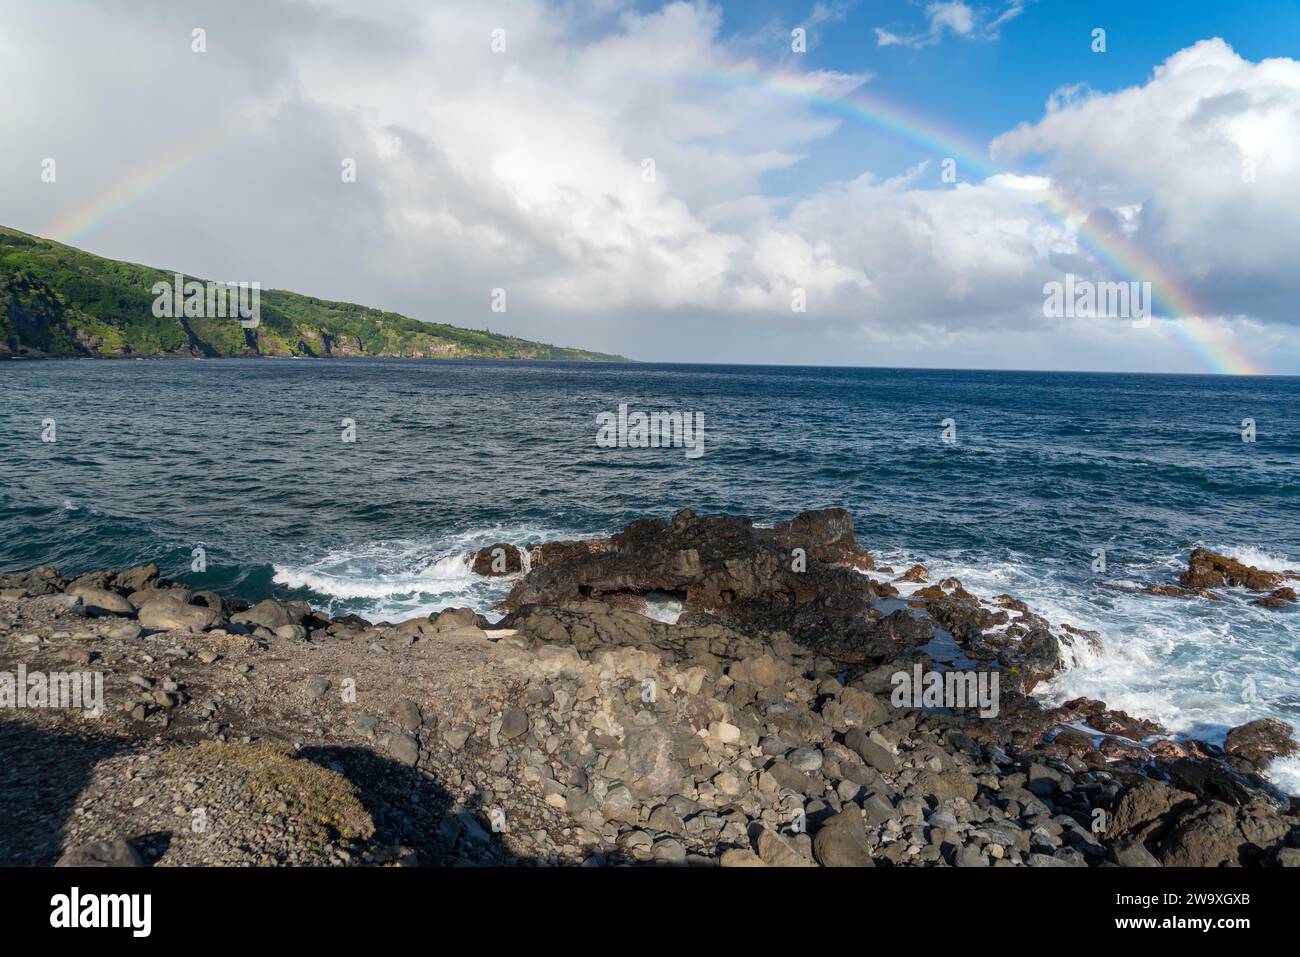 Uno spettacolare arcobaleno incorona lo spruzzo dell'oceano lungo la costa di roccia lavica del Parco Nazionale di Haleakalā, vista dall'autostrada Piilani a Maui. Foto Stock